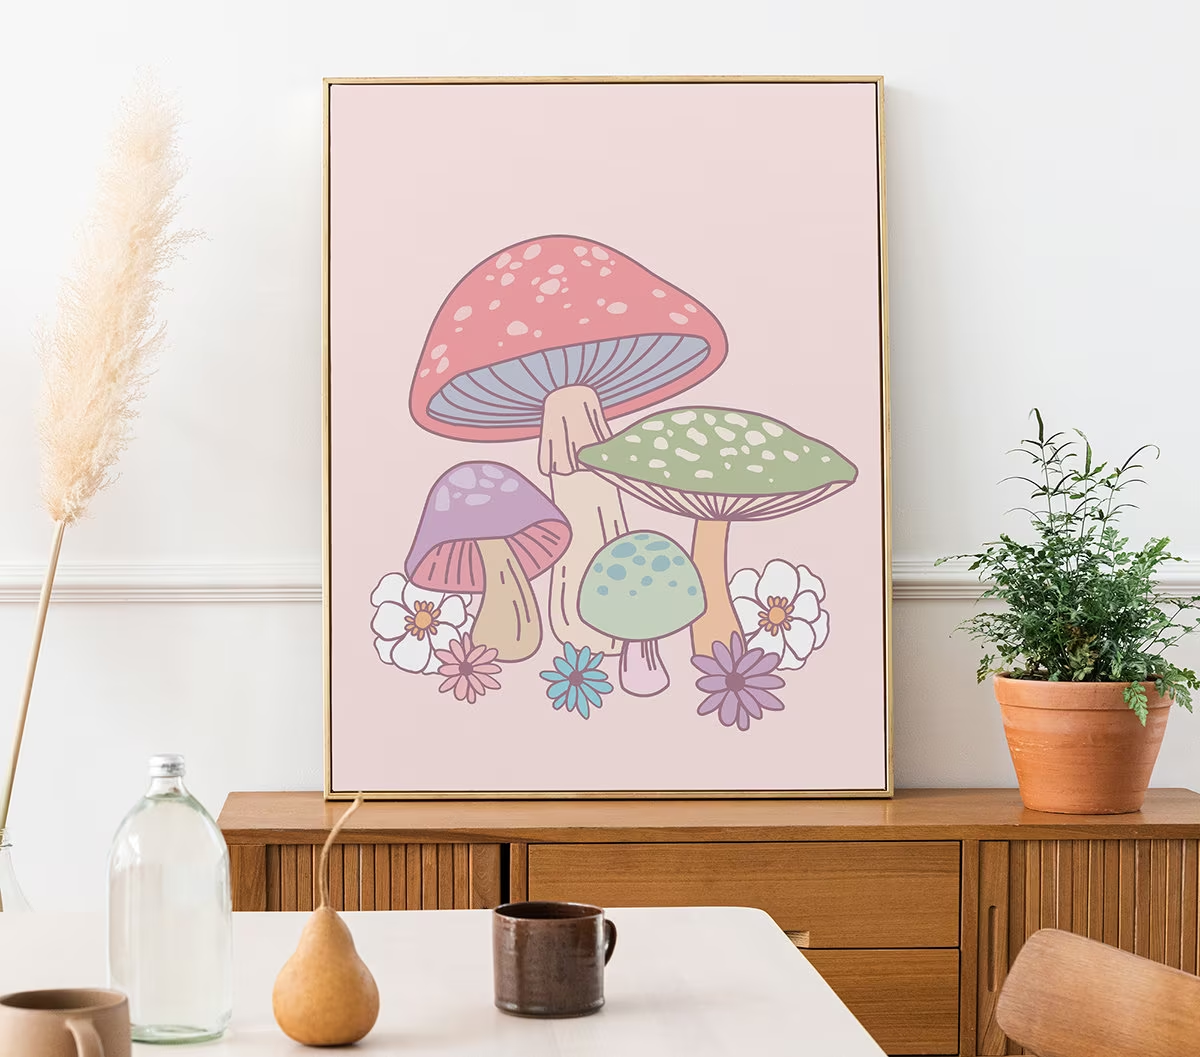 Mushroom frame in pastel colors